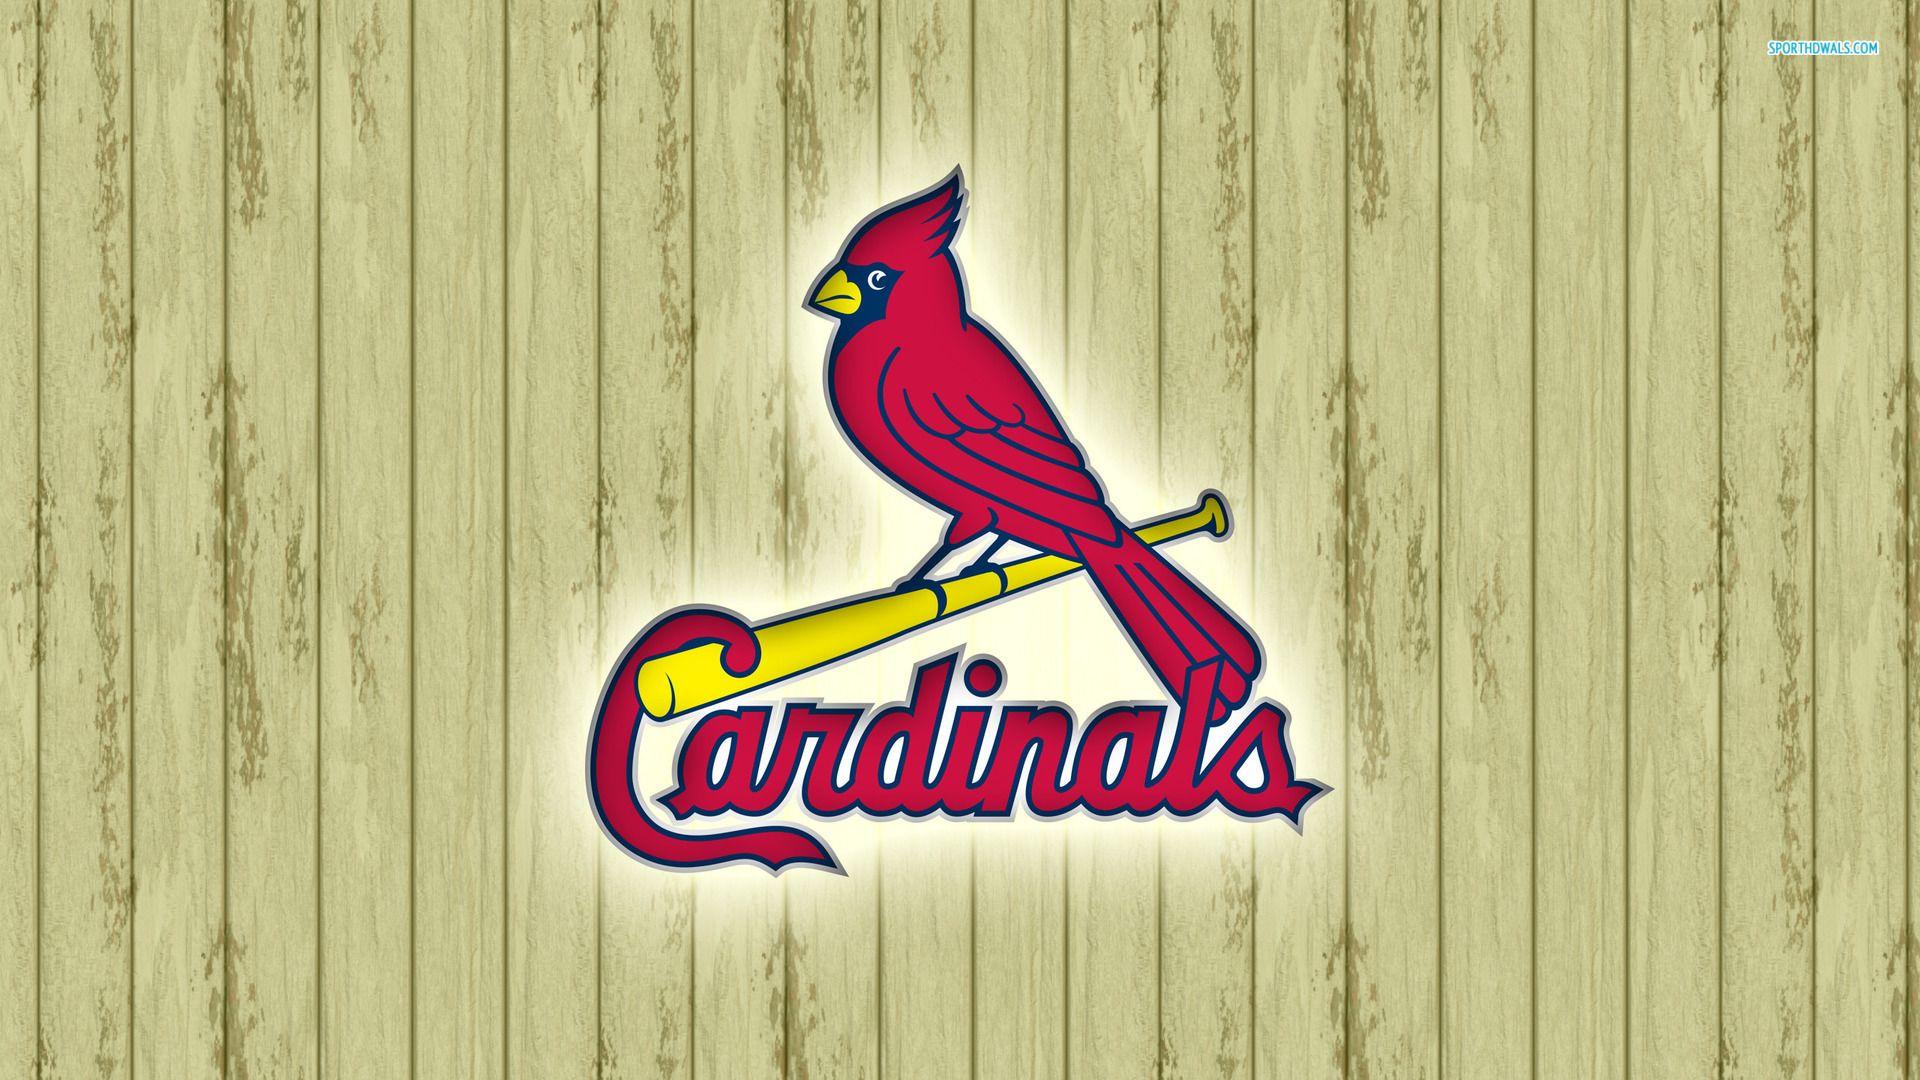 100 St Louis Cardinals Wallpapers  Wallpaperscom